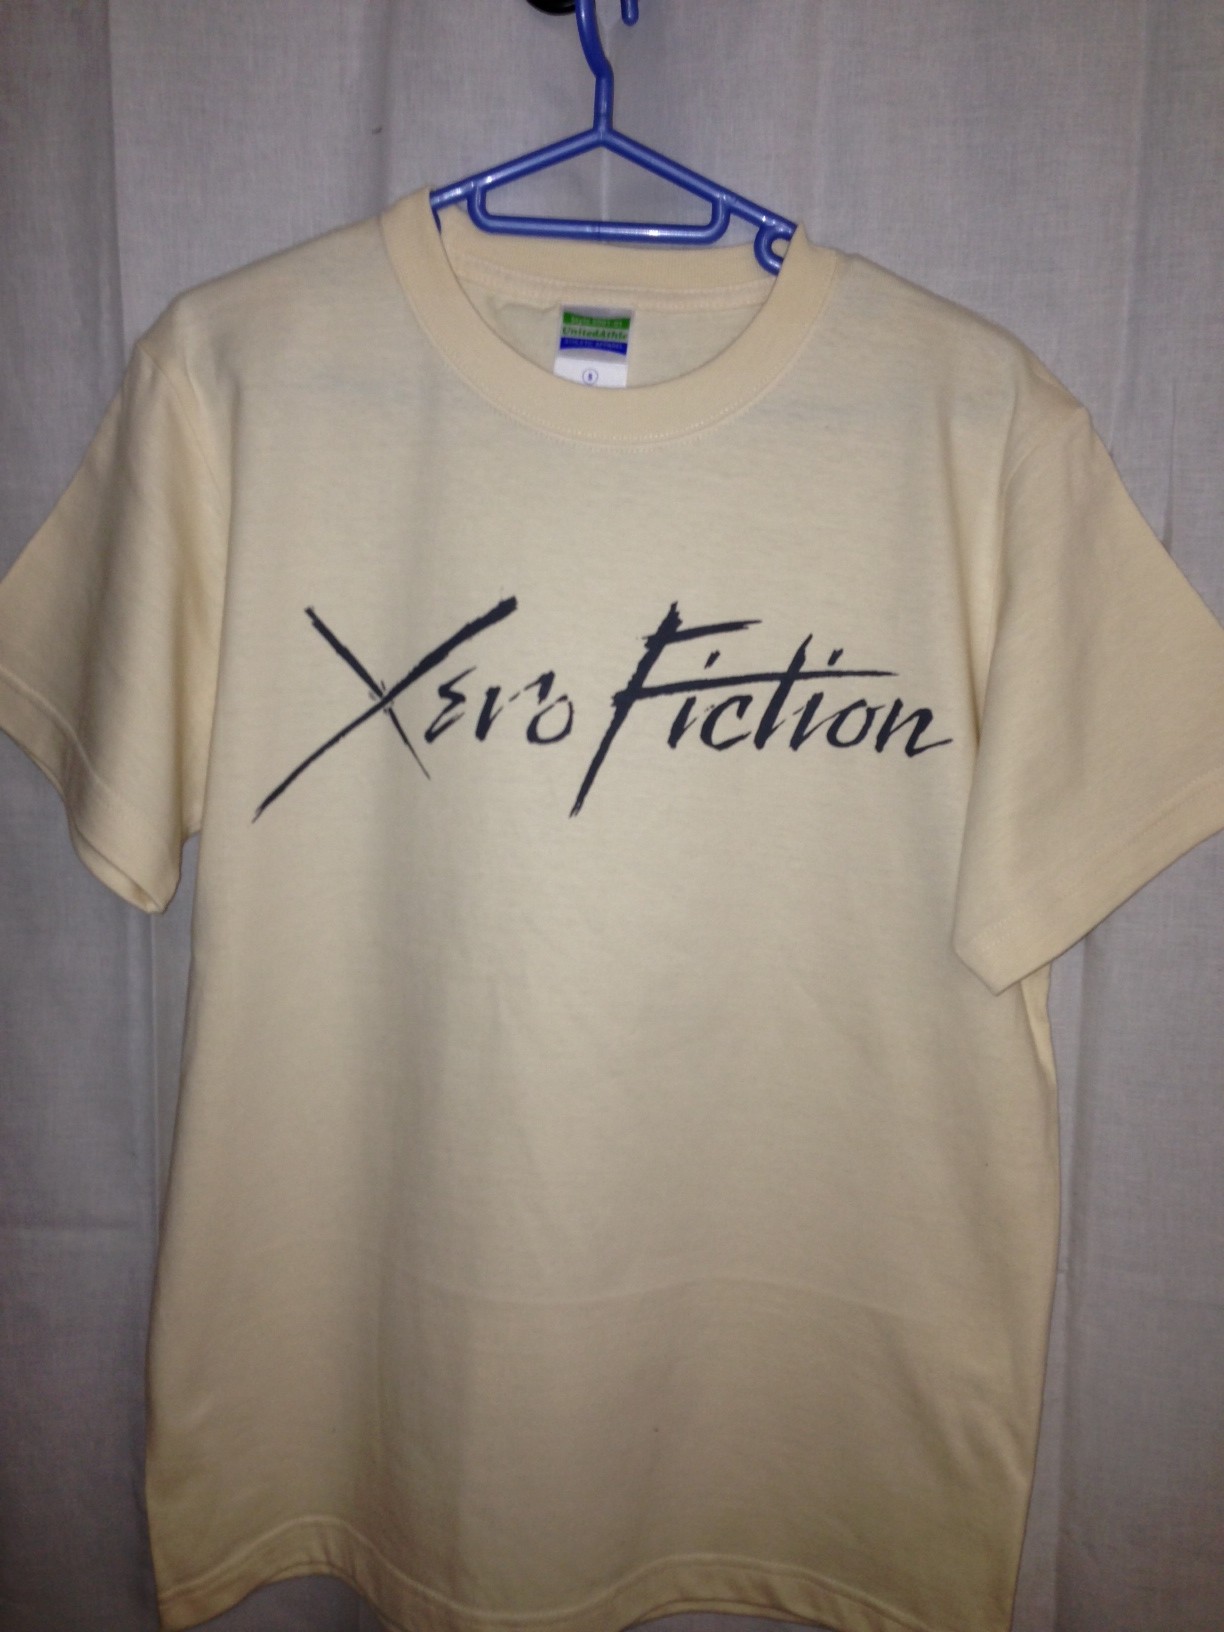 Xero FictionのTシャツ明日神戸から売るの。よろしく＾＾ってblog_e0228727_2354063.jpg